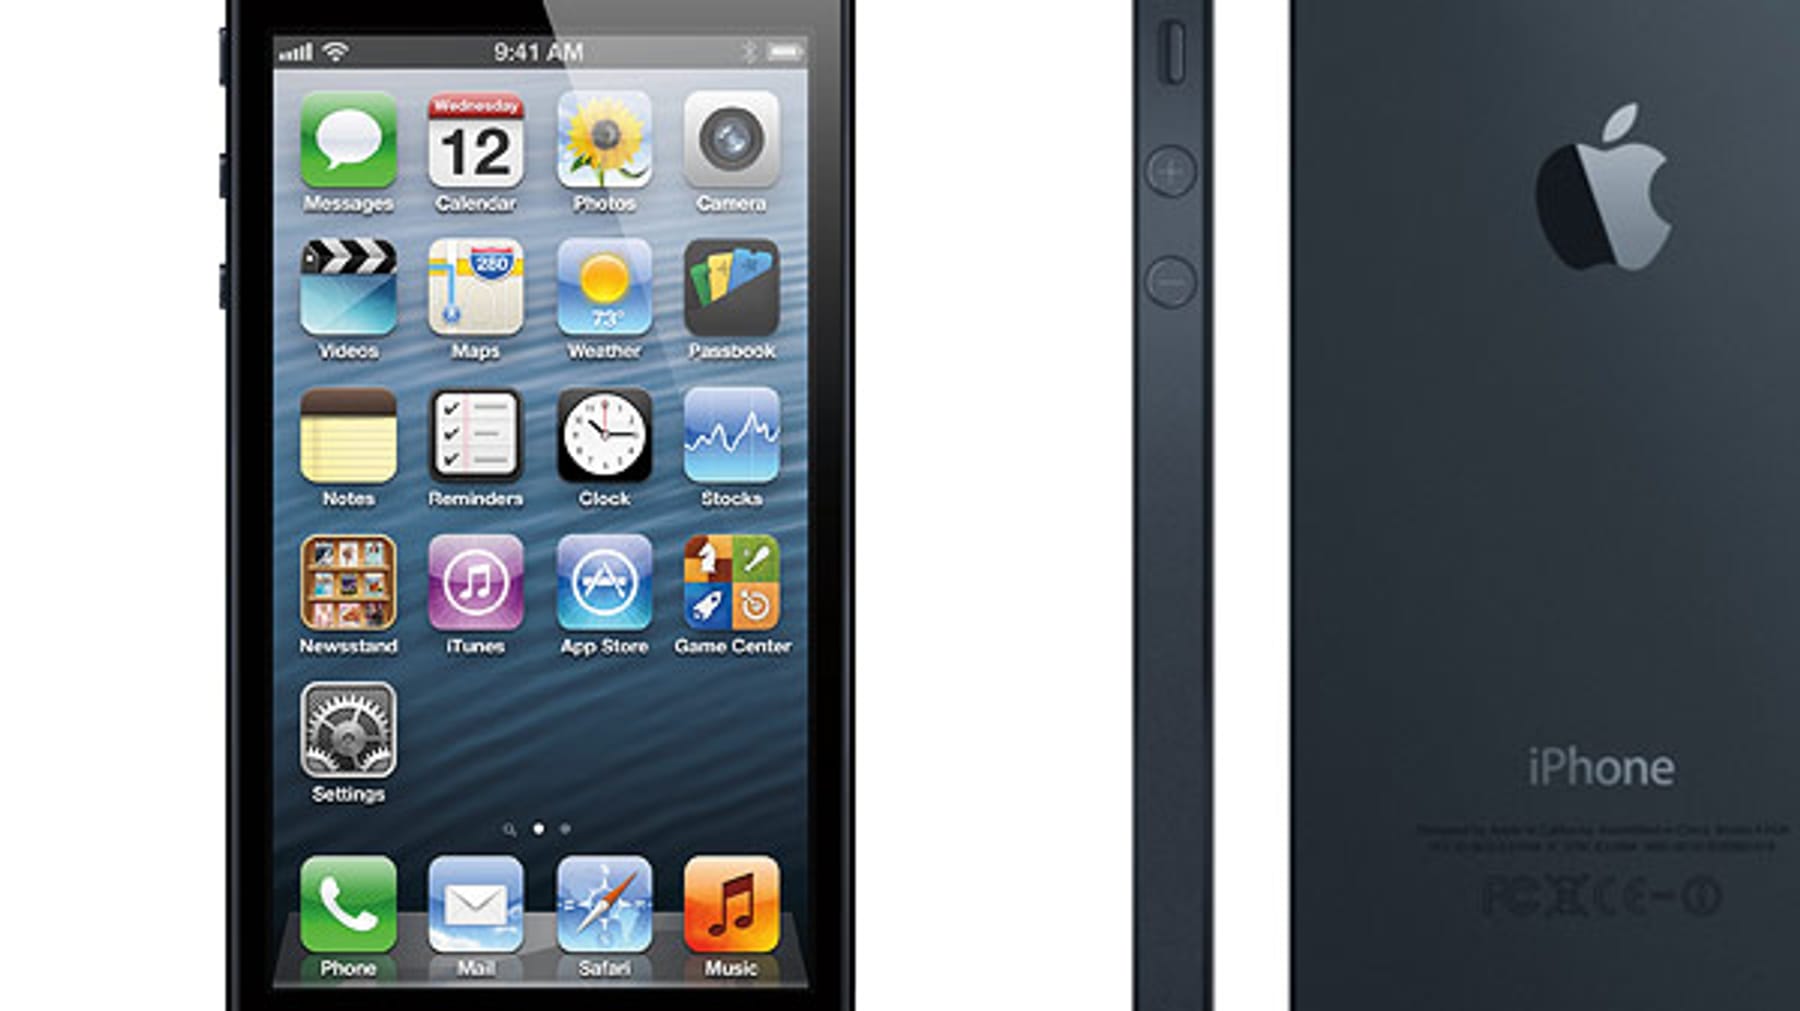 Apple-Panne: Prototyp des iPhone 5 in Bar verloren? - FOCUS online